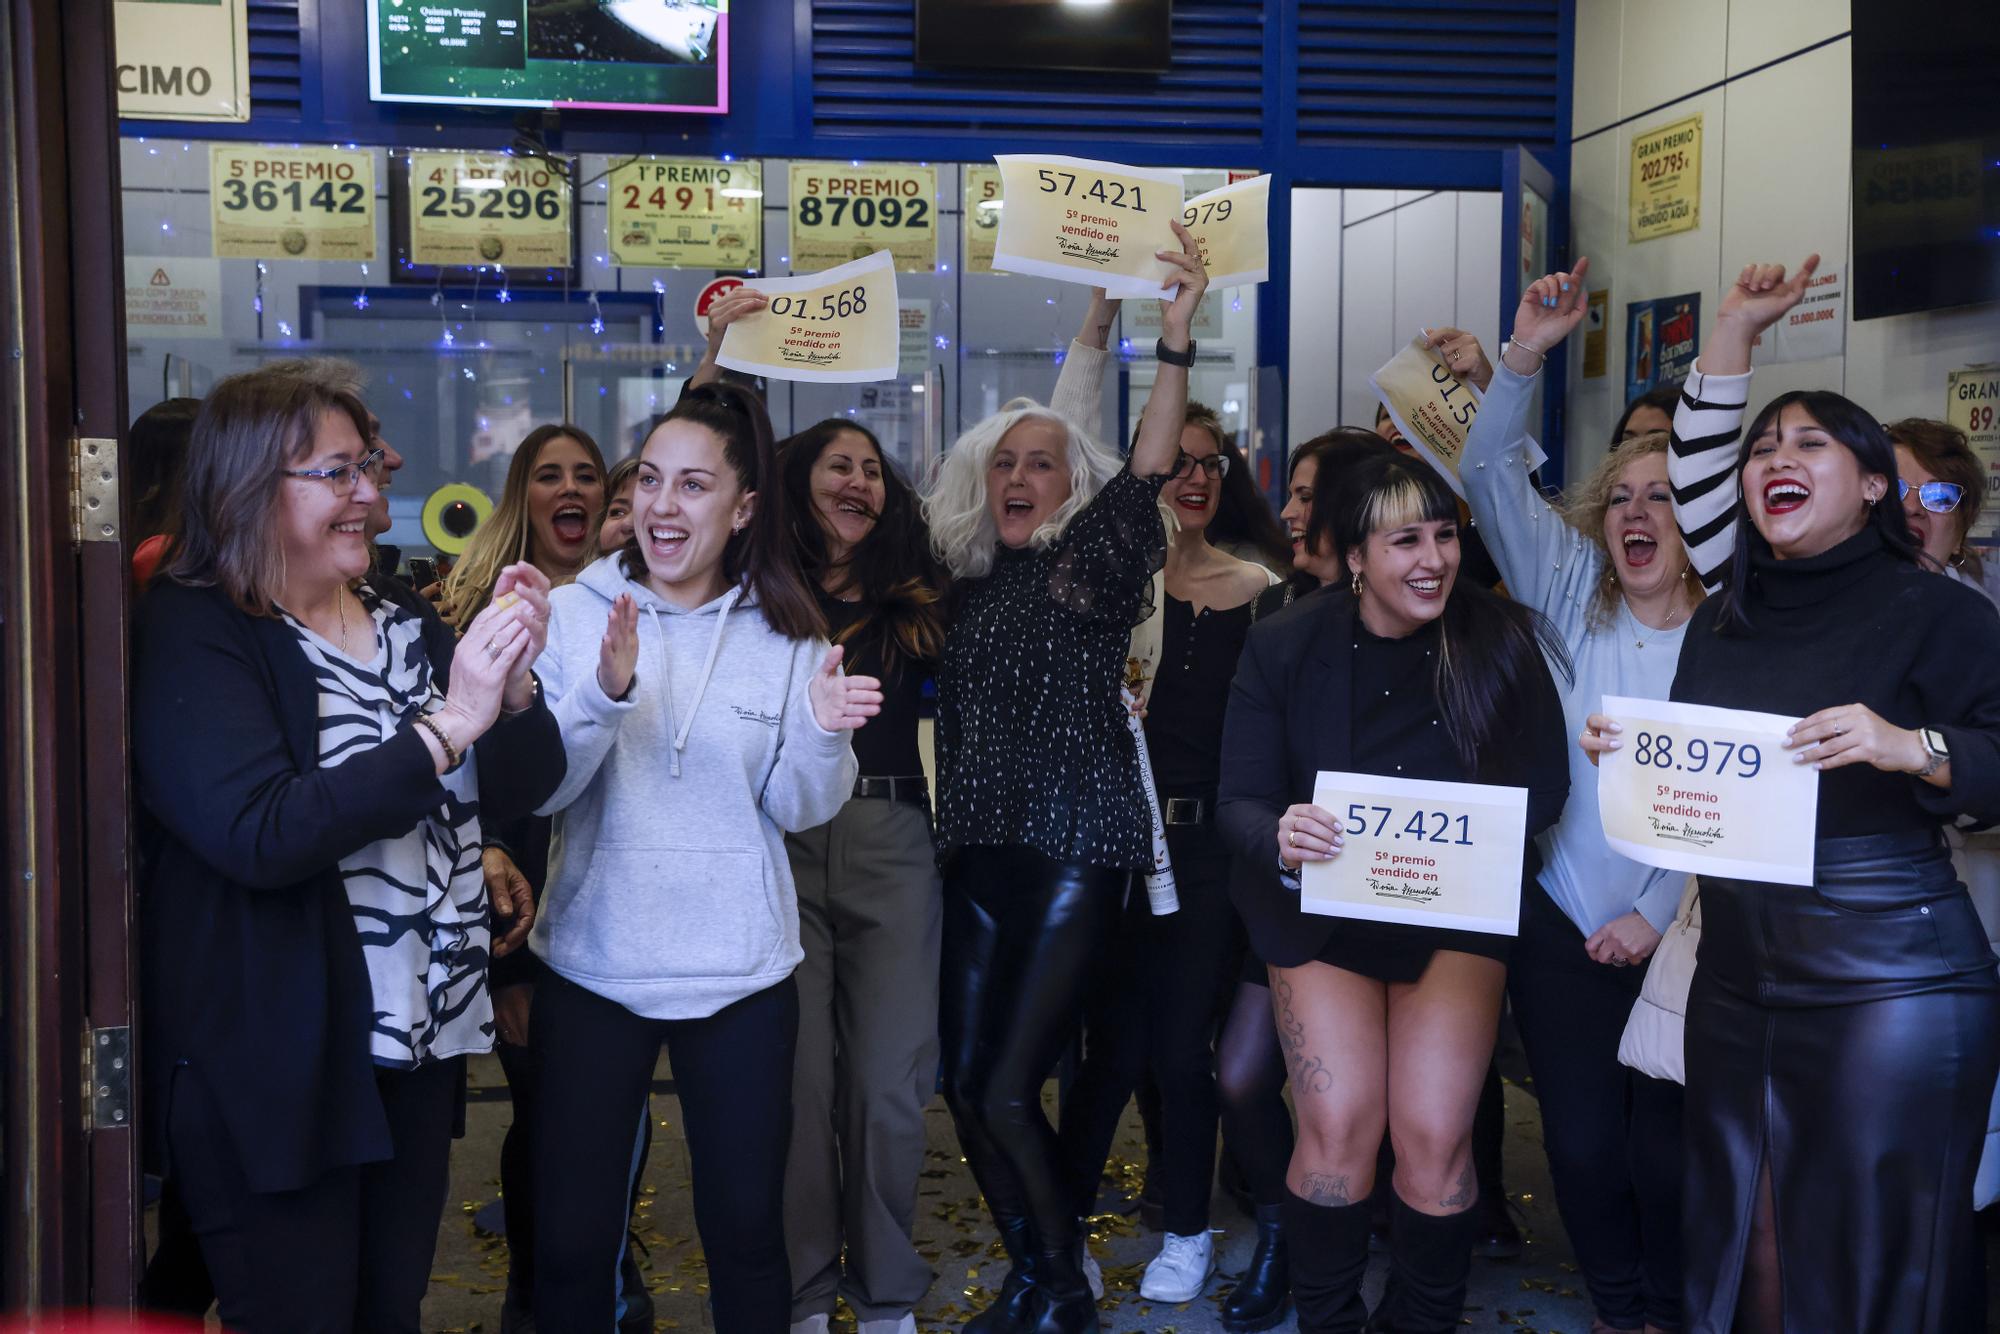 Celebraciones en Doña Manolita tras vender dos quintos premios del sorteo extraordinario de Navidad de la Lotería Nacional